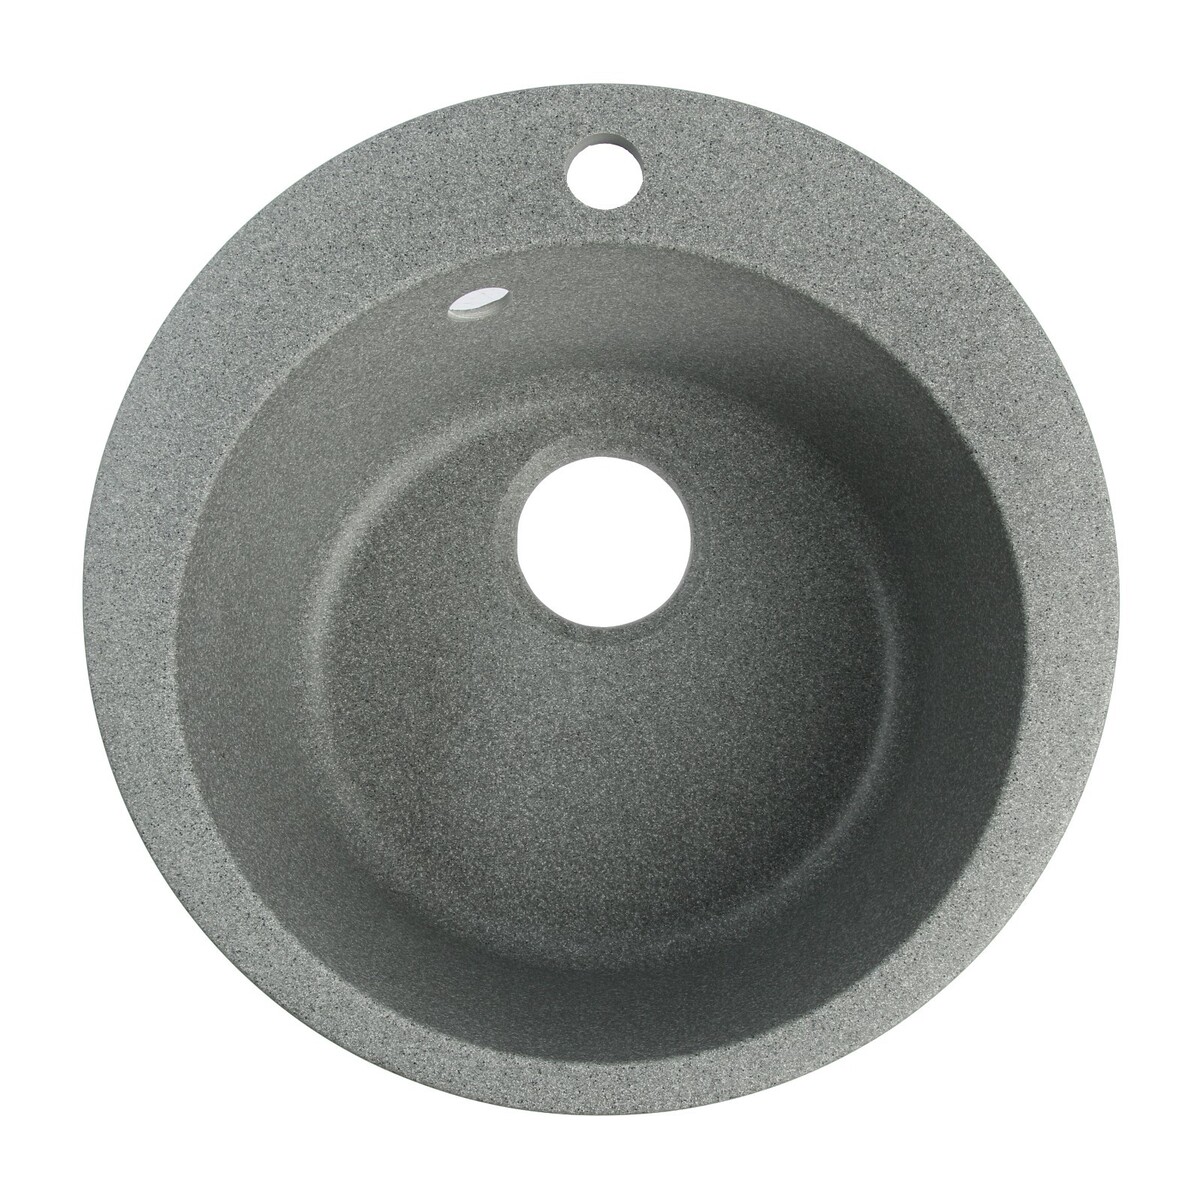 Мойка для кухни из камня zein 30/q8, d=475 мм, круглая, перелив, цвет темно-серый мойка для кухни из камня zein 3 q10 d 510 мм круглая перелив светло серый